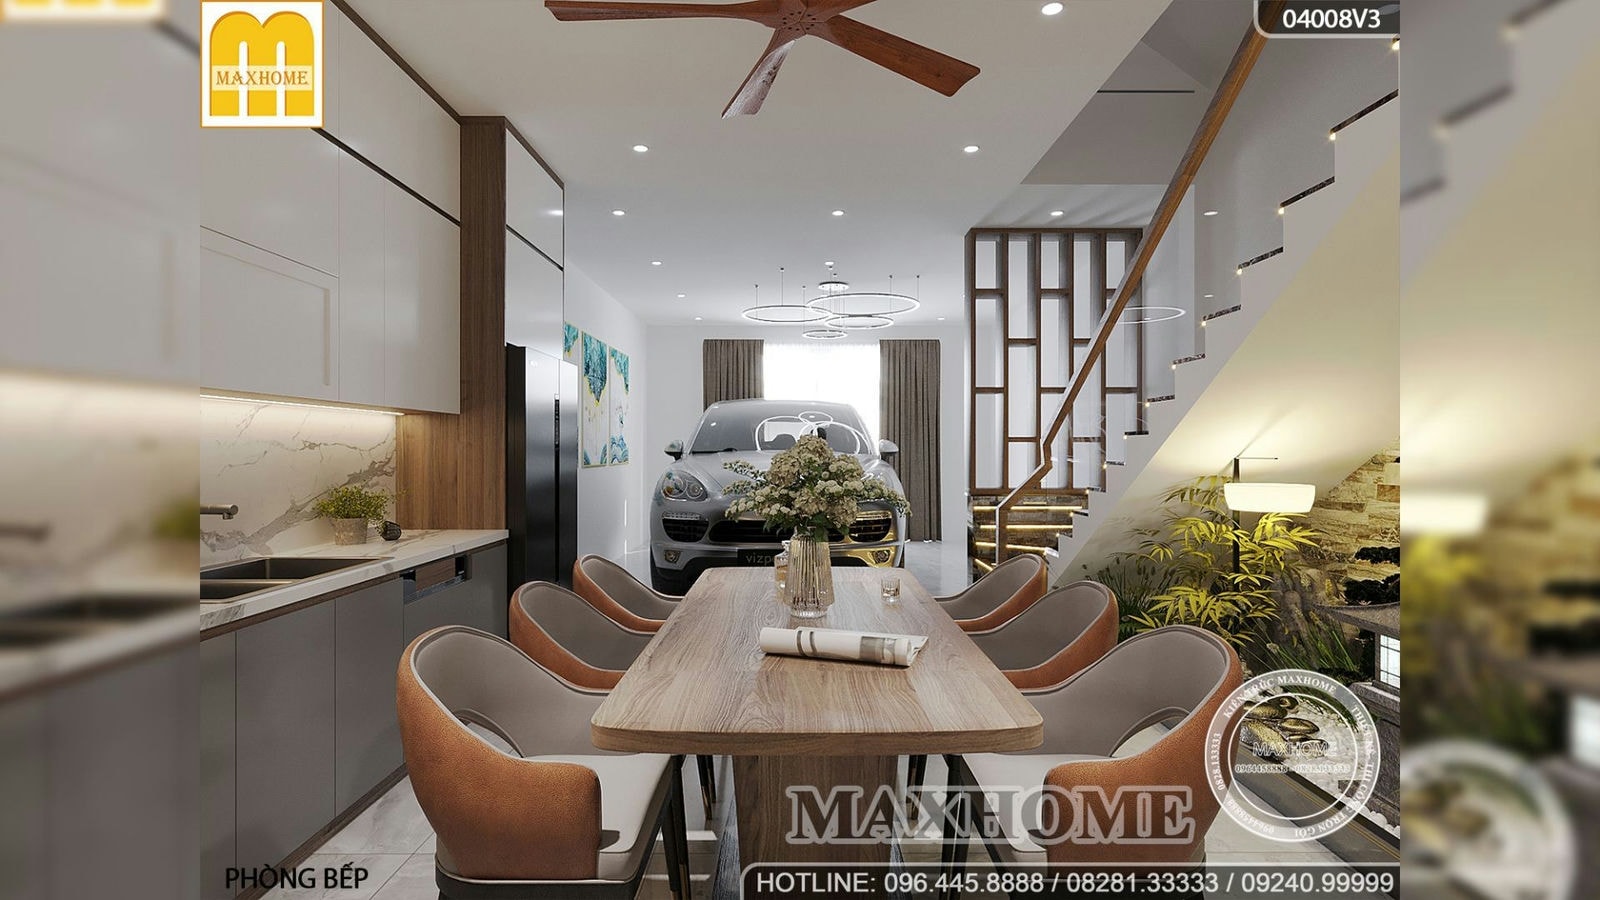 Giới thiệu bộ nội thất hiện đại cho nhà phố 2 tầng 1 tum ở Đồng Nai